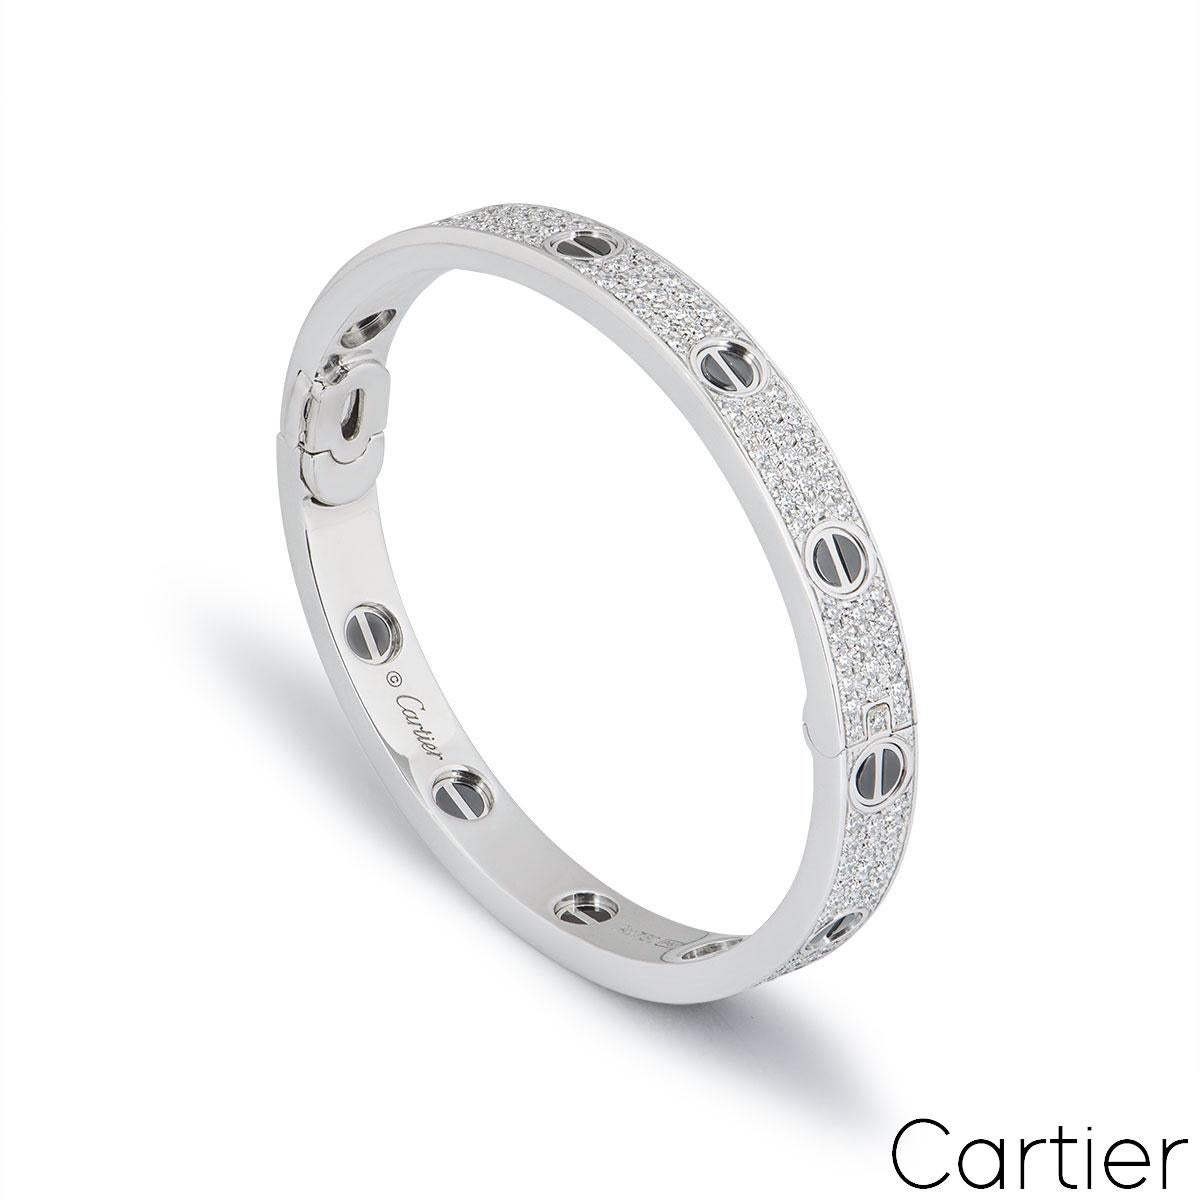 Superbe bracelet en or blanc 18 carats, diamants et céramique, signé Cartier, de la collection Love. Le bracelet en céramique noire est serti des motifs de vis emblématiques sur le pourtour extérieur, et 204 diamants ronds de taille brillant sont